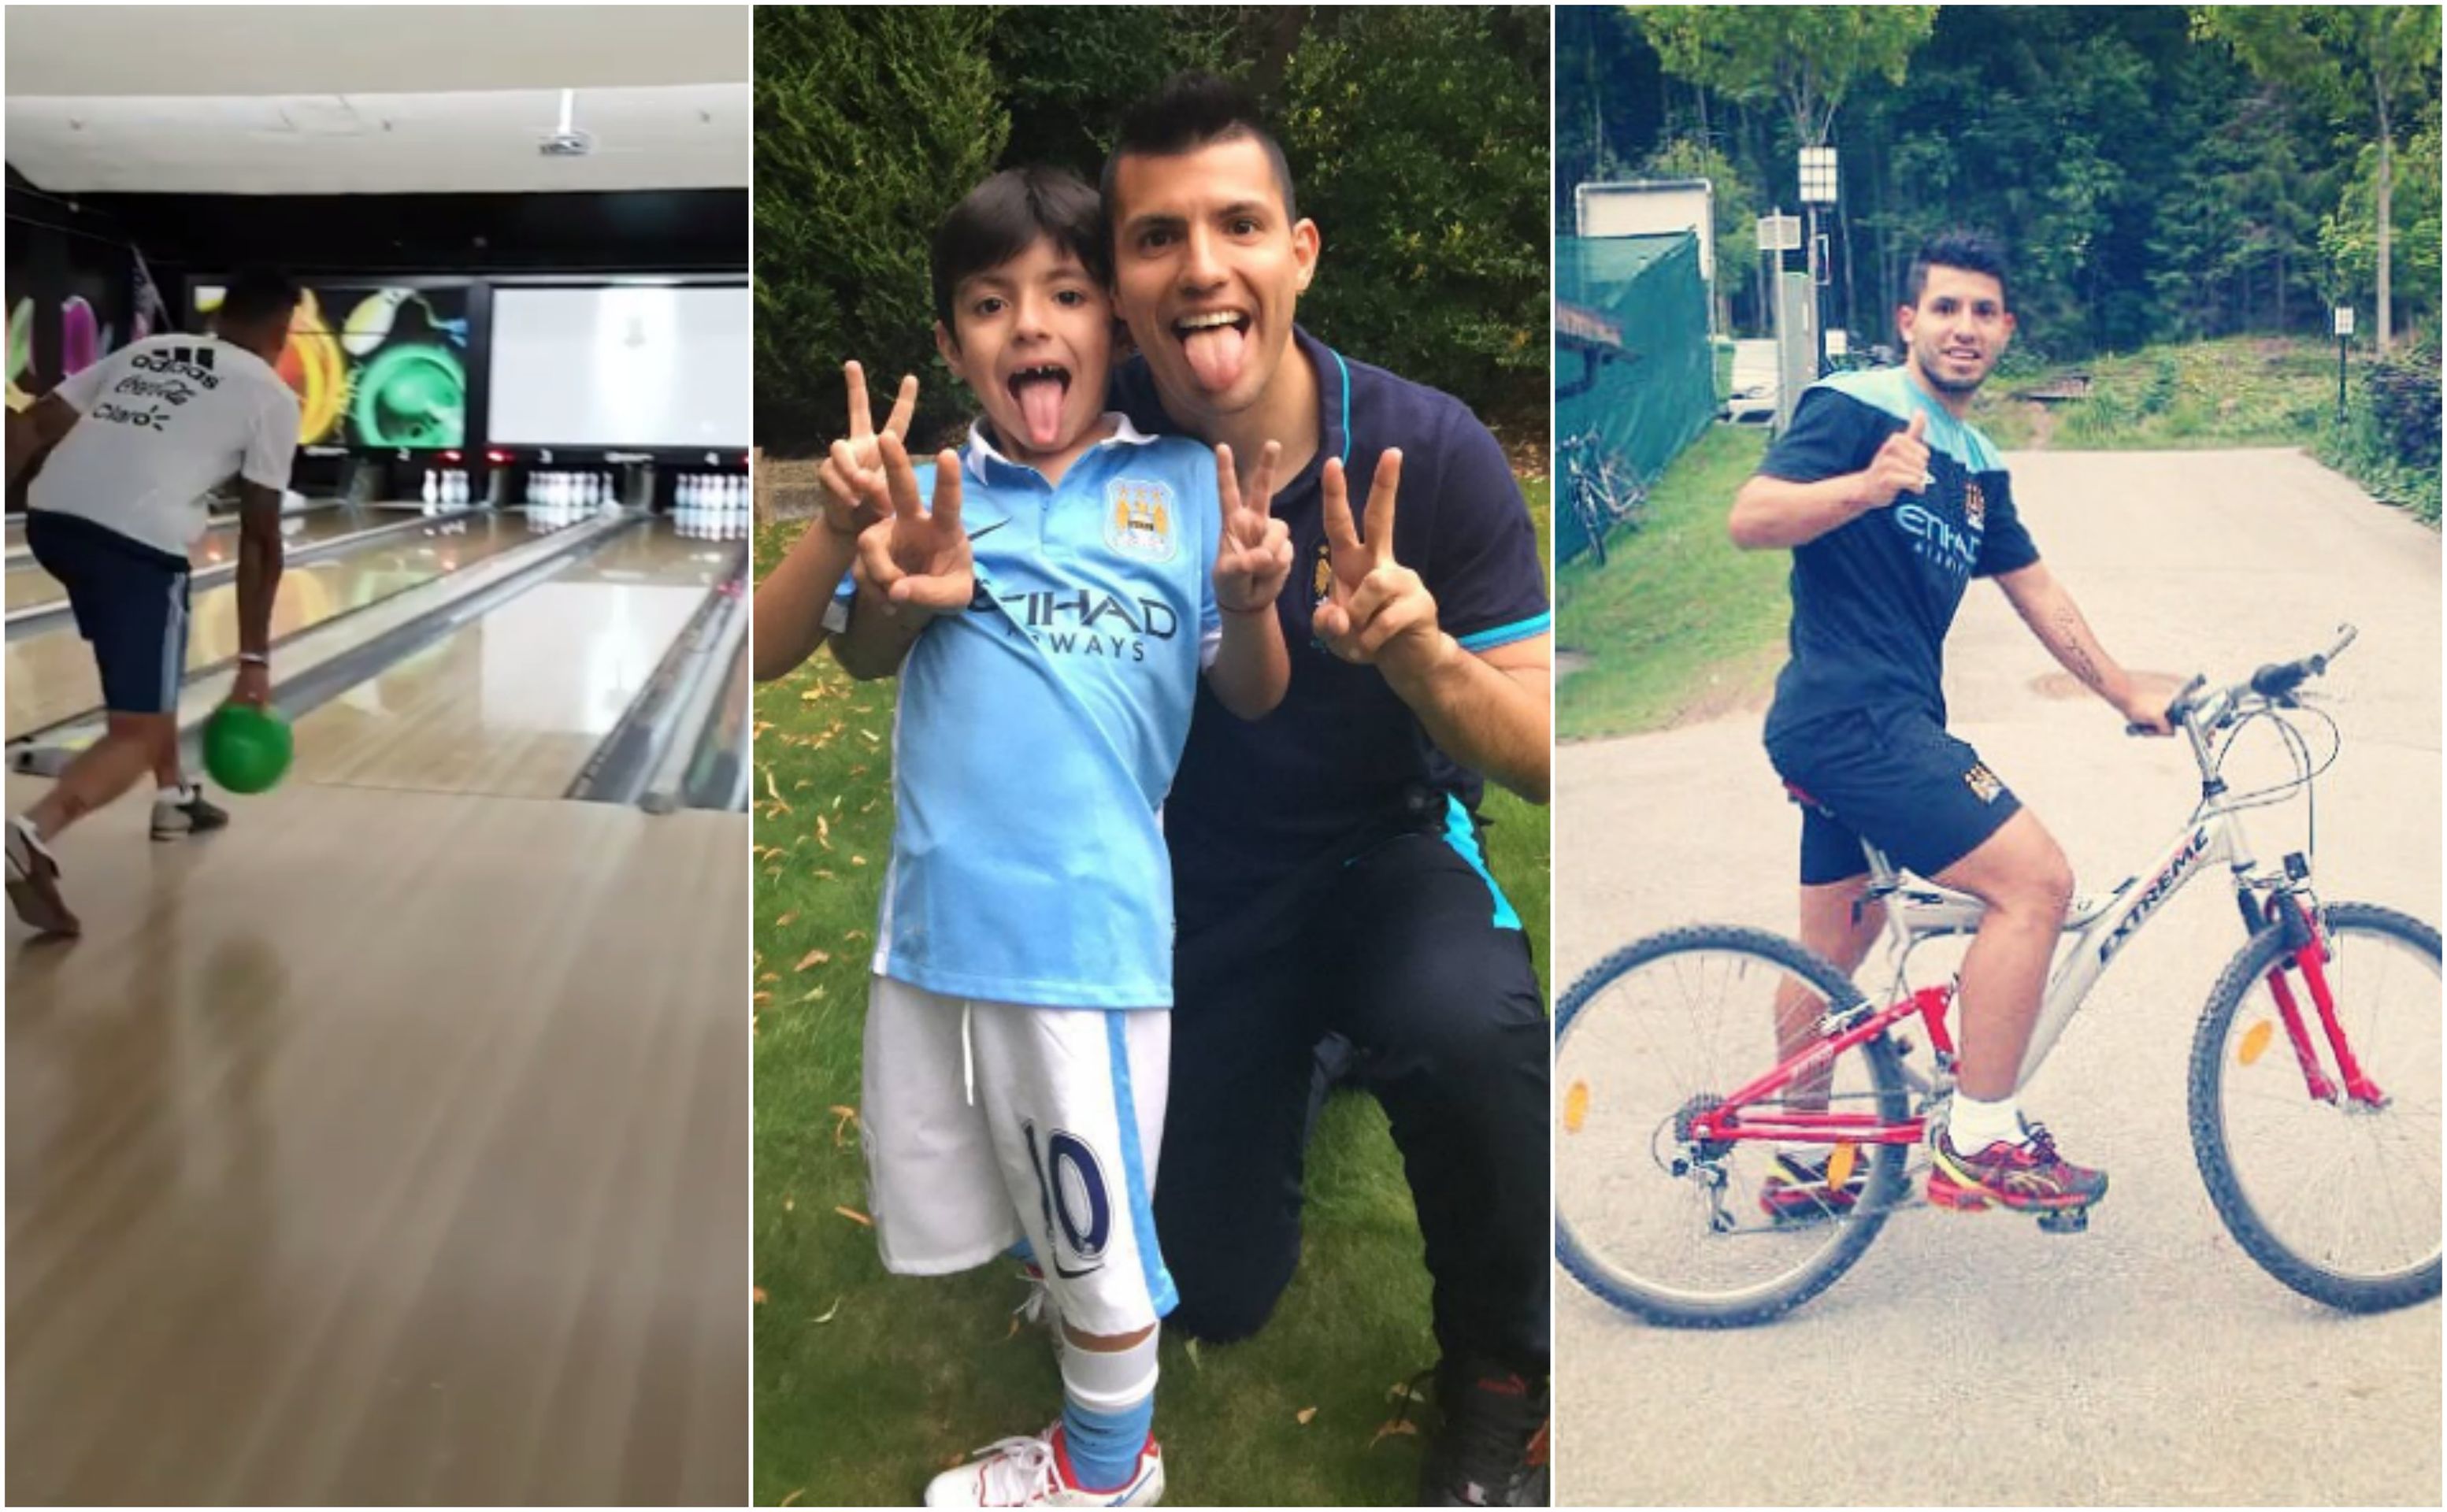 Sergio Agüero nedá dopustit na svého syna a miluje sport - GALERIE: Rodina, cestování i zpěv ! Co baví největší hvězdy Premier League? (8/10)